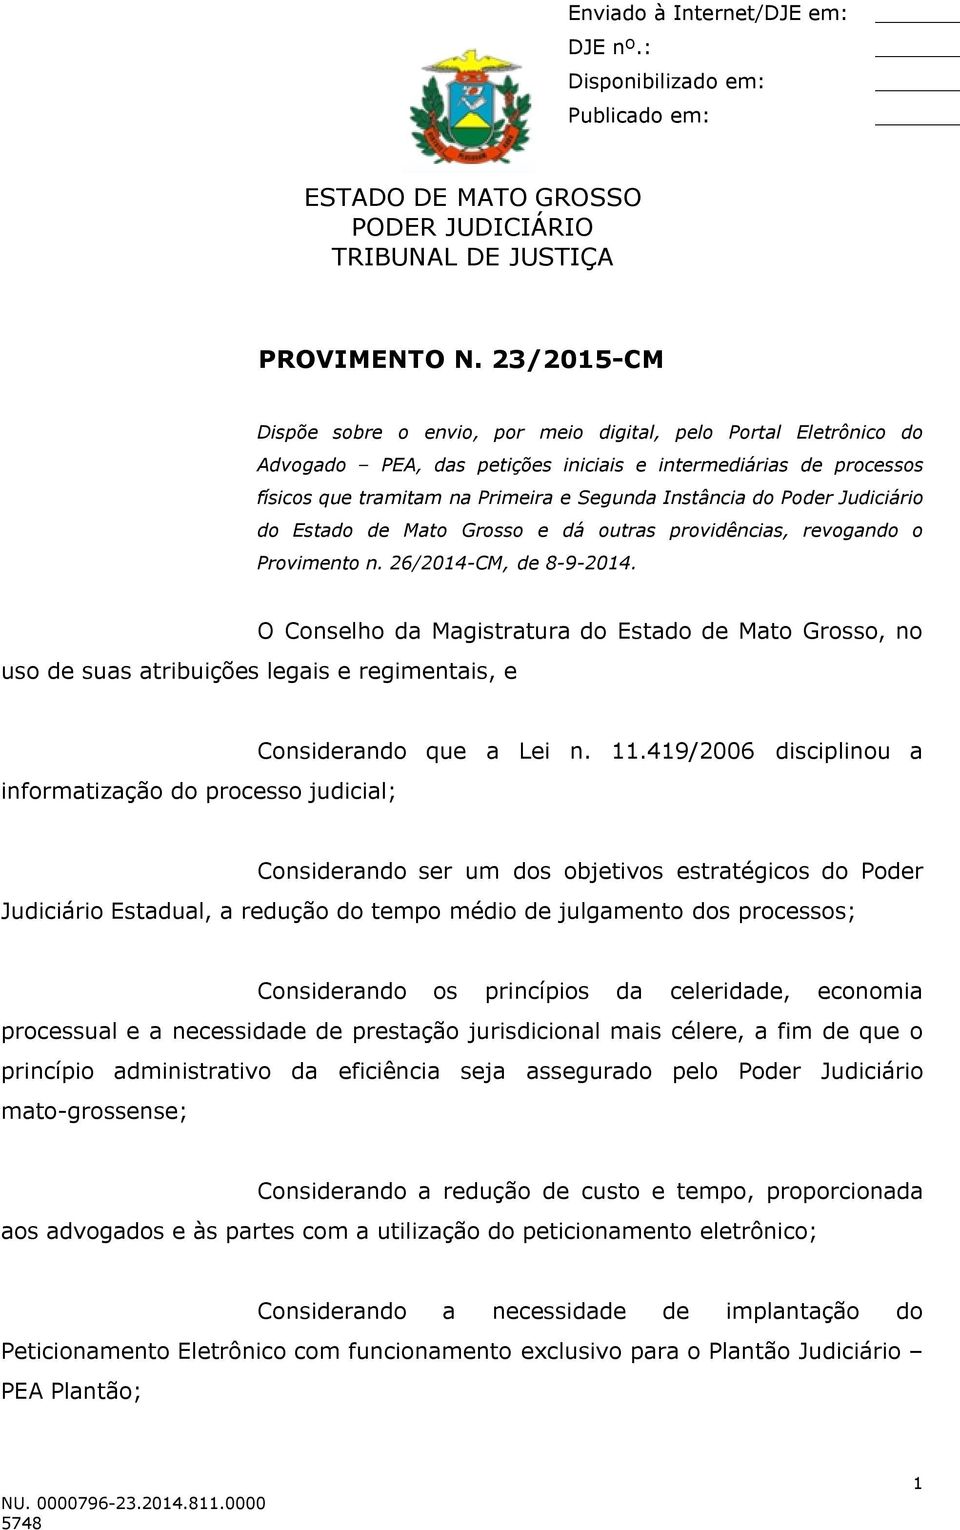 Poder Judiciário do Estado de Mato Grosso e dá outras providências, revogando o Provimento n. 26/2014-CM, de 8-9-2014.